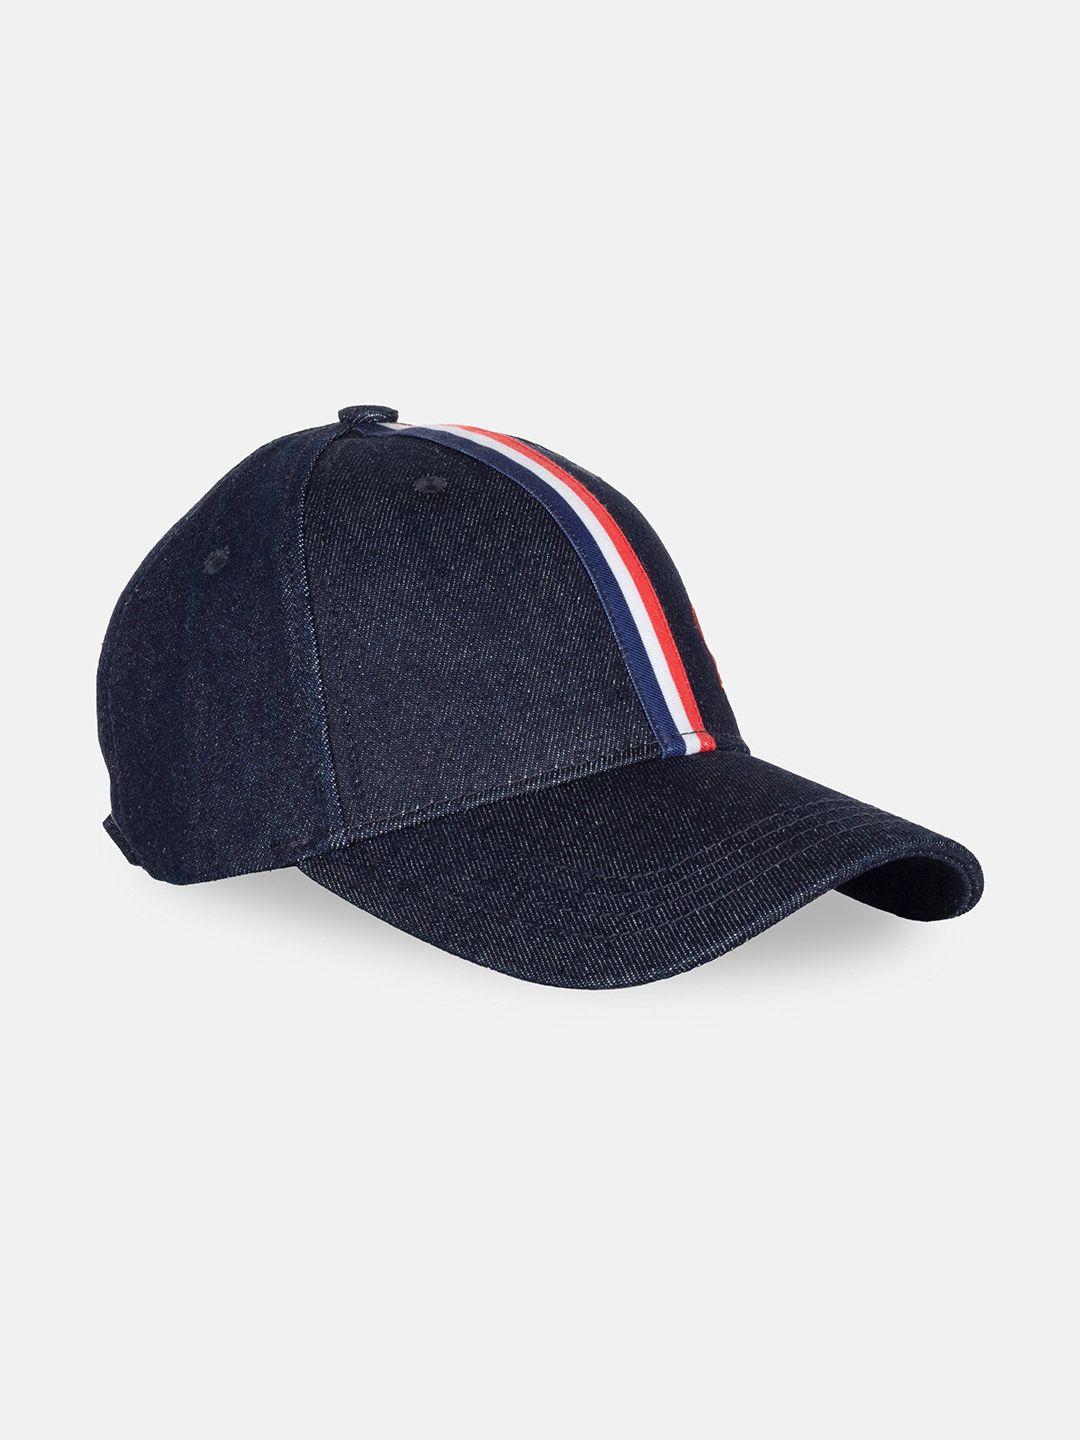 status quo men embroidered baseball cap